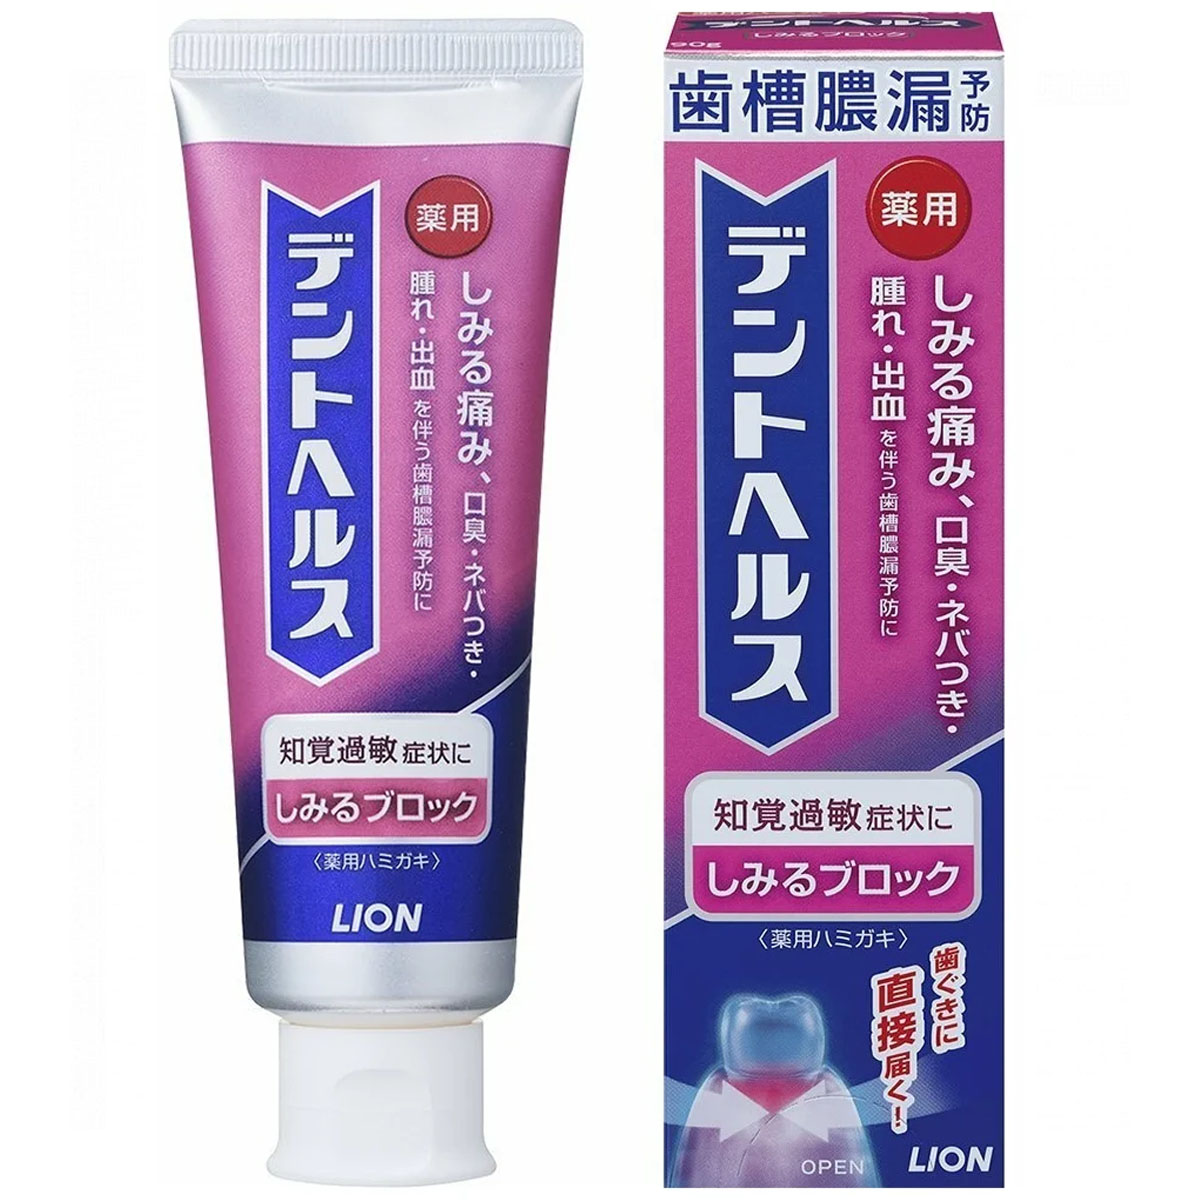 Зубная паста LION и в японии жатва многа…